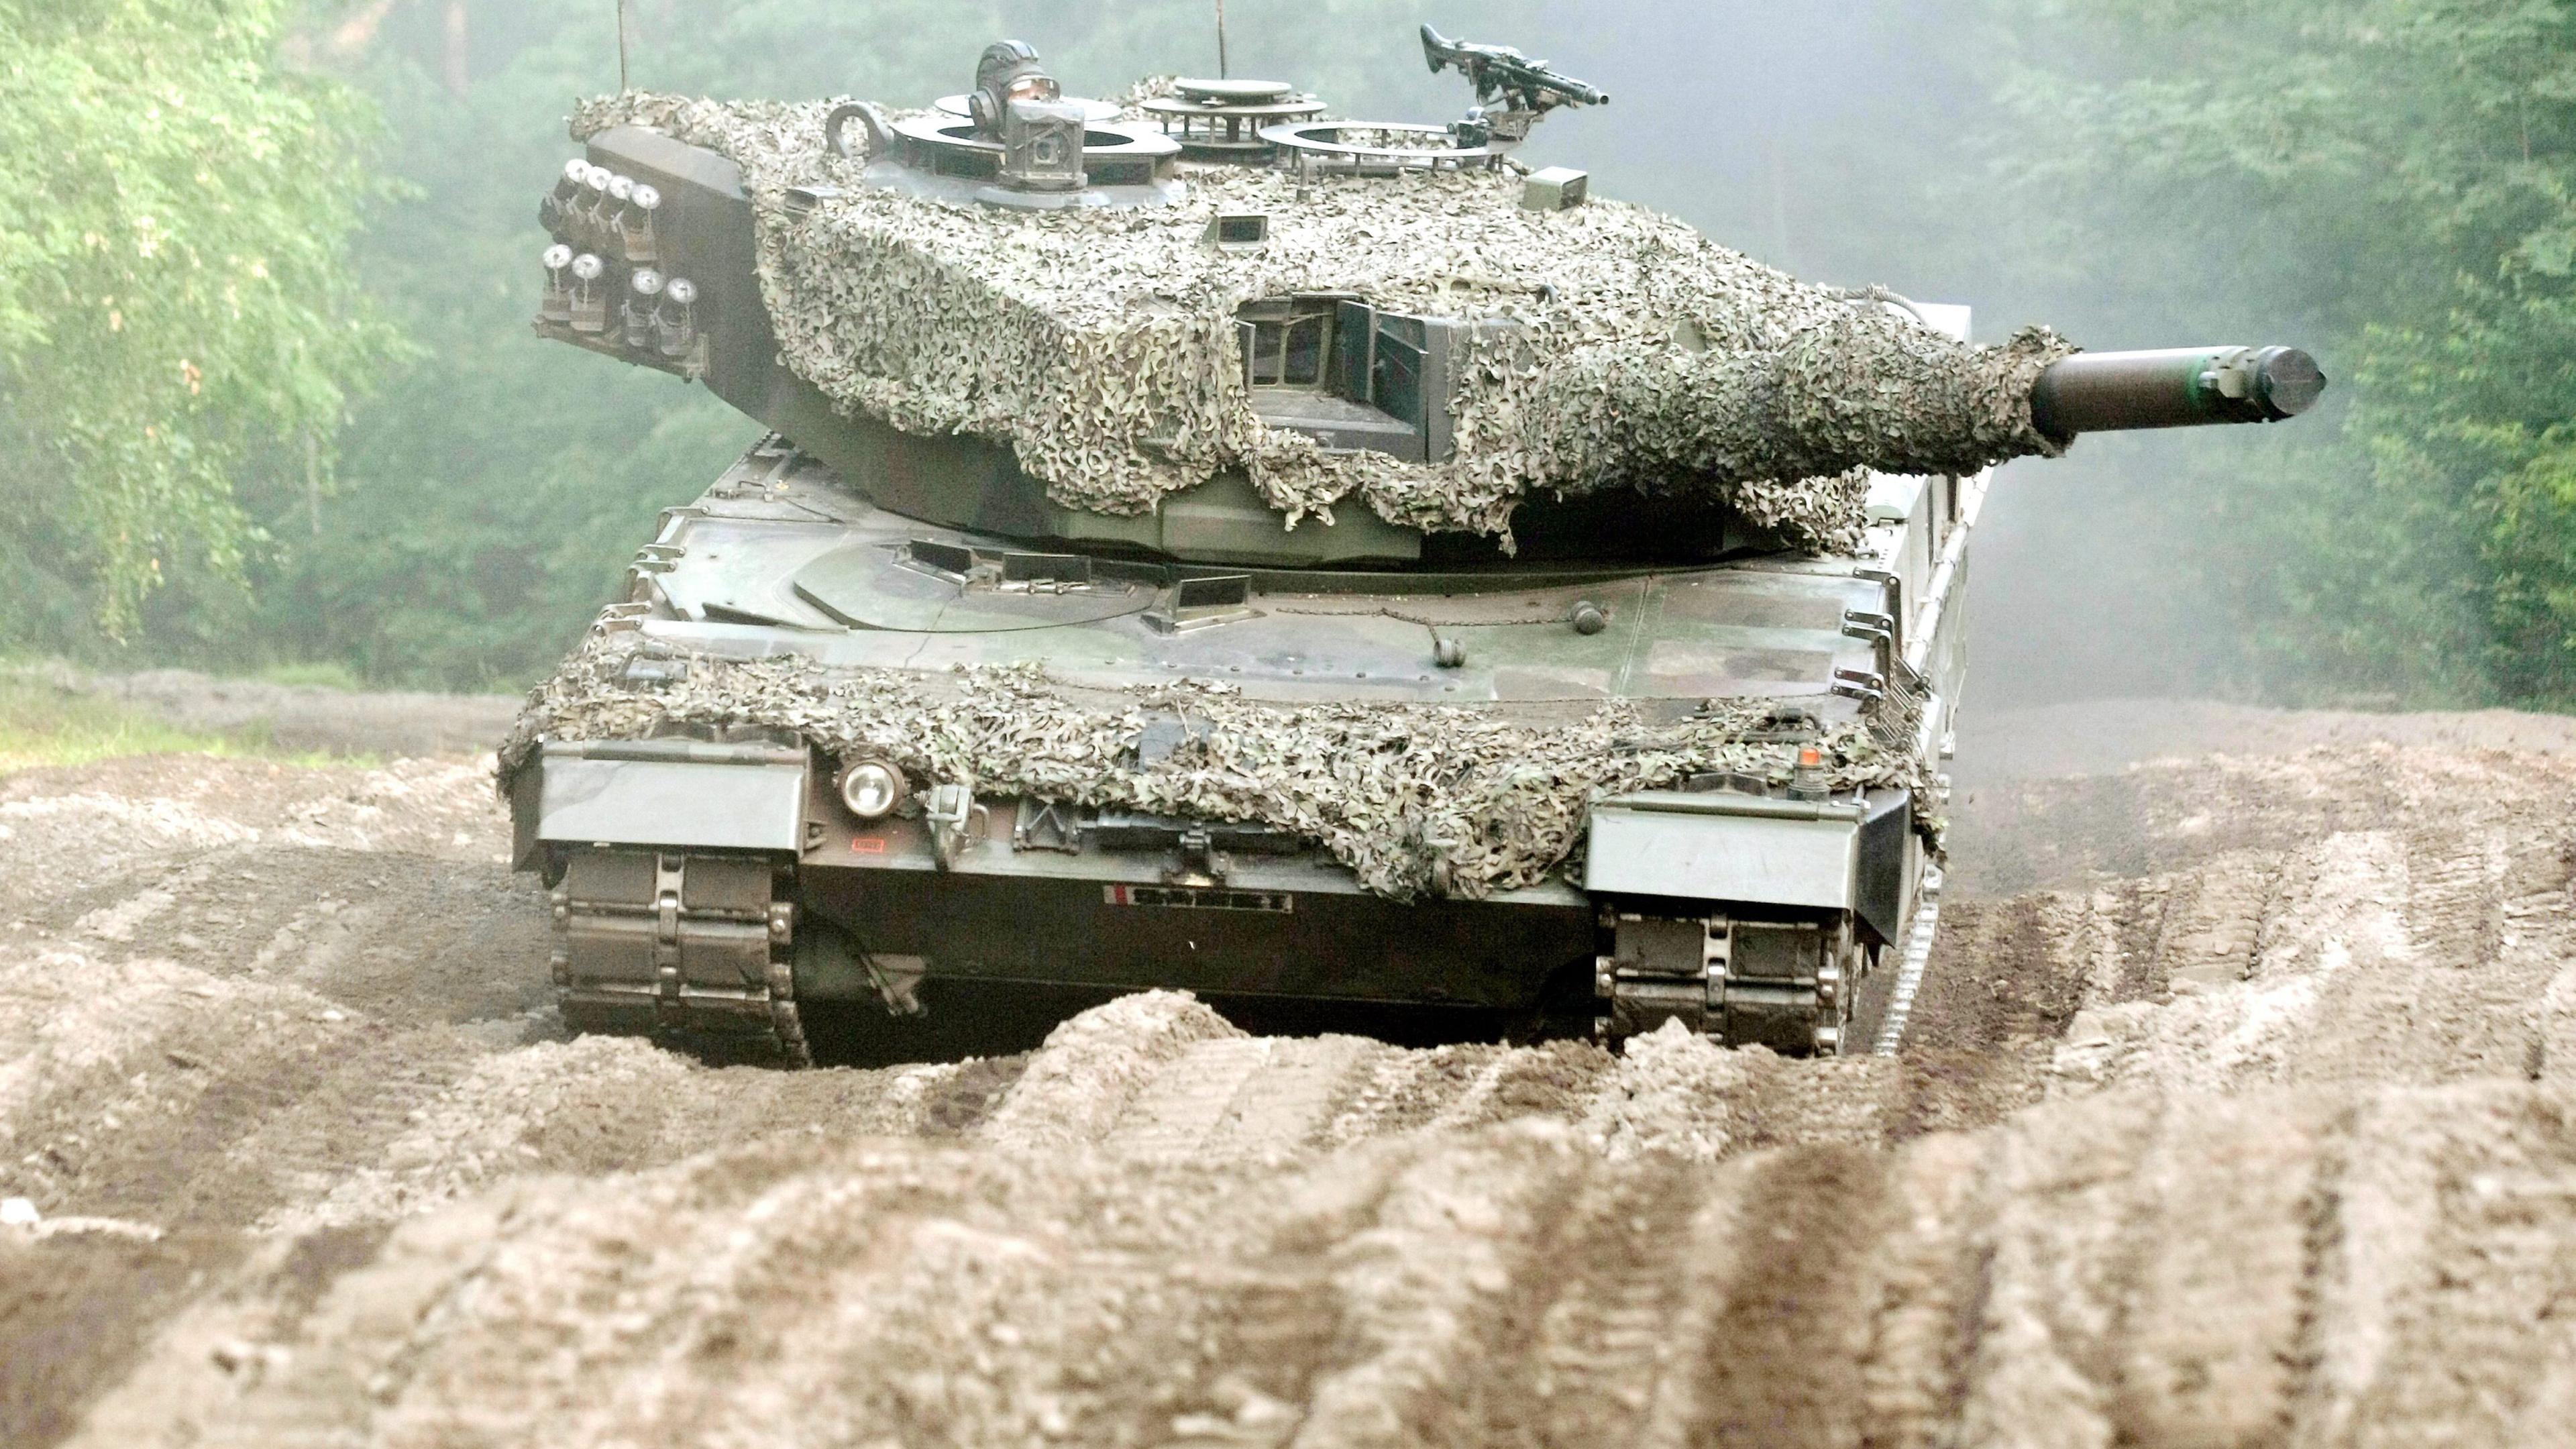 Polen, Swietoszow: Ein Leopard 2A4 Panzer der polnischen 10. Panzerkavalleriebrigade aus Swietoszow. Arcivbild